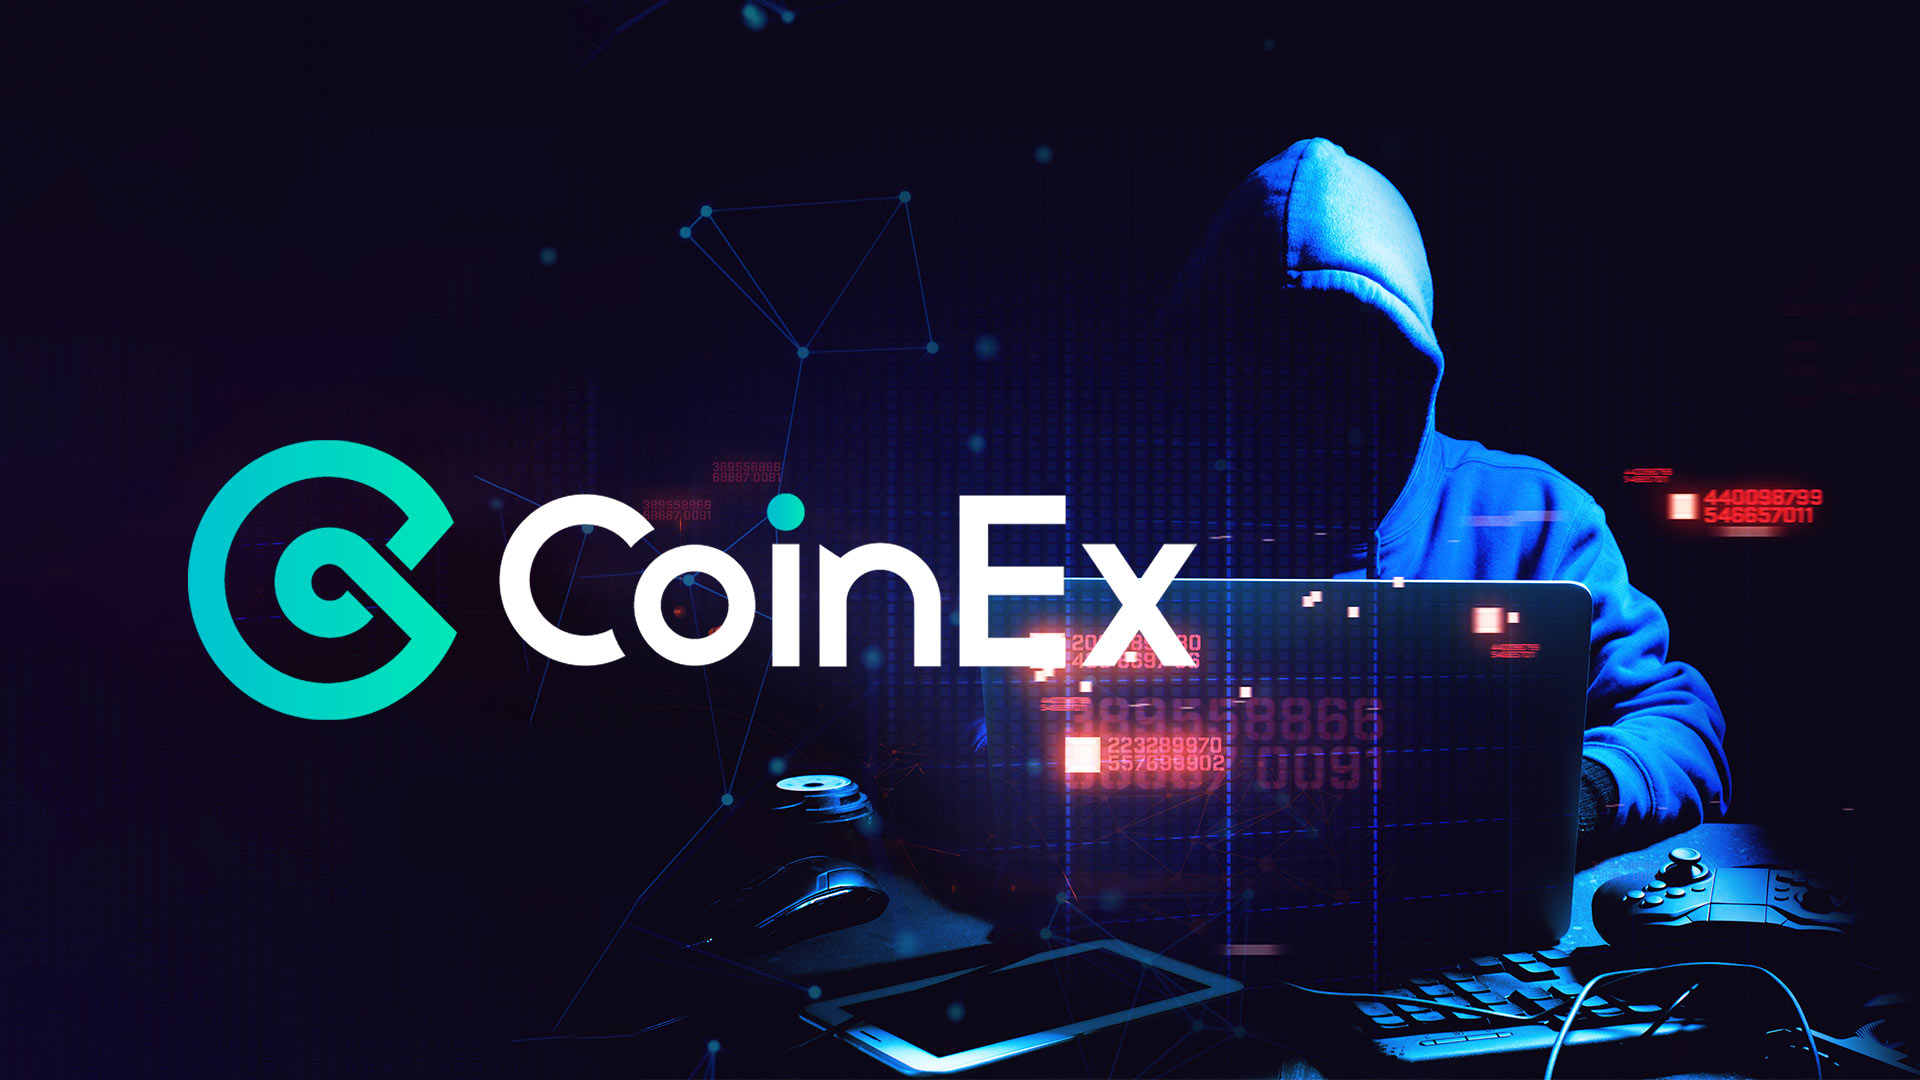 El exchange CoinEx se pronuncia luego del hackeo por USD 70 millones